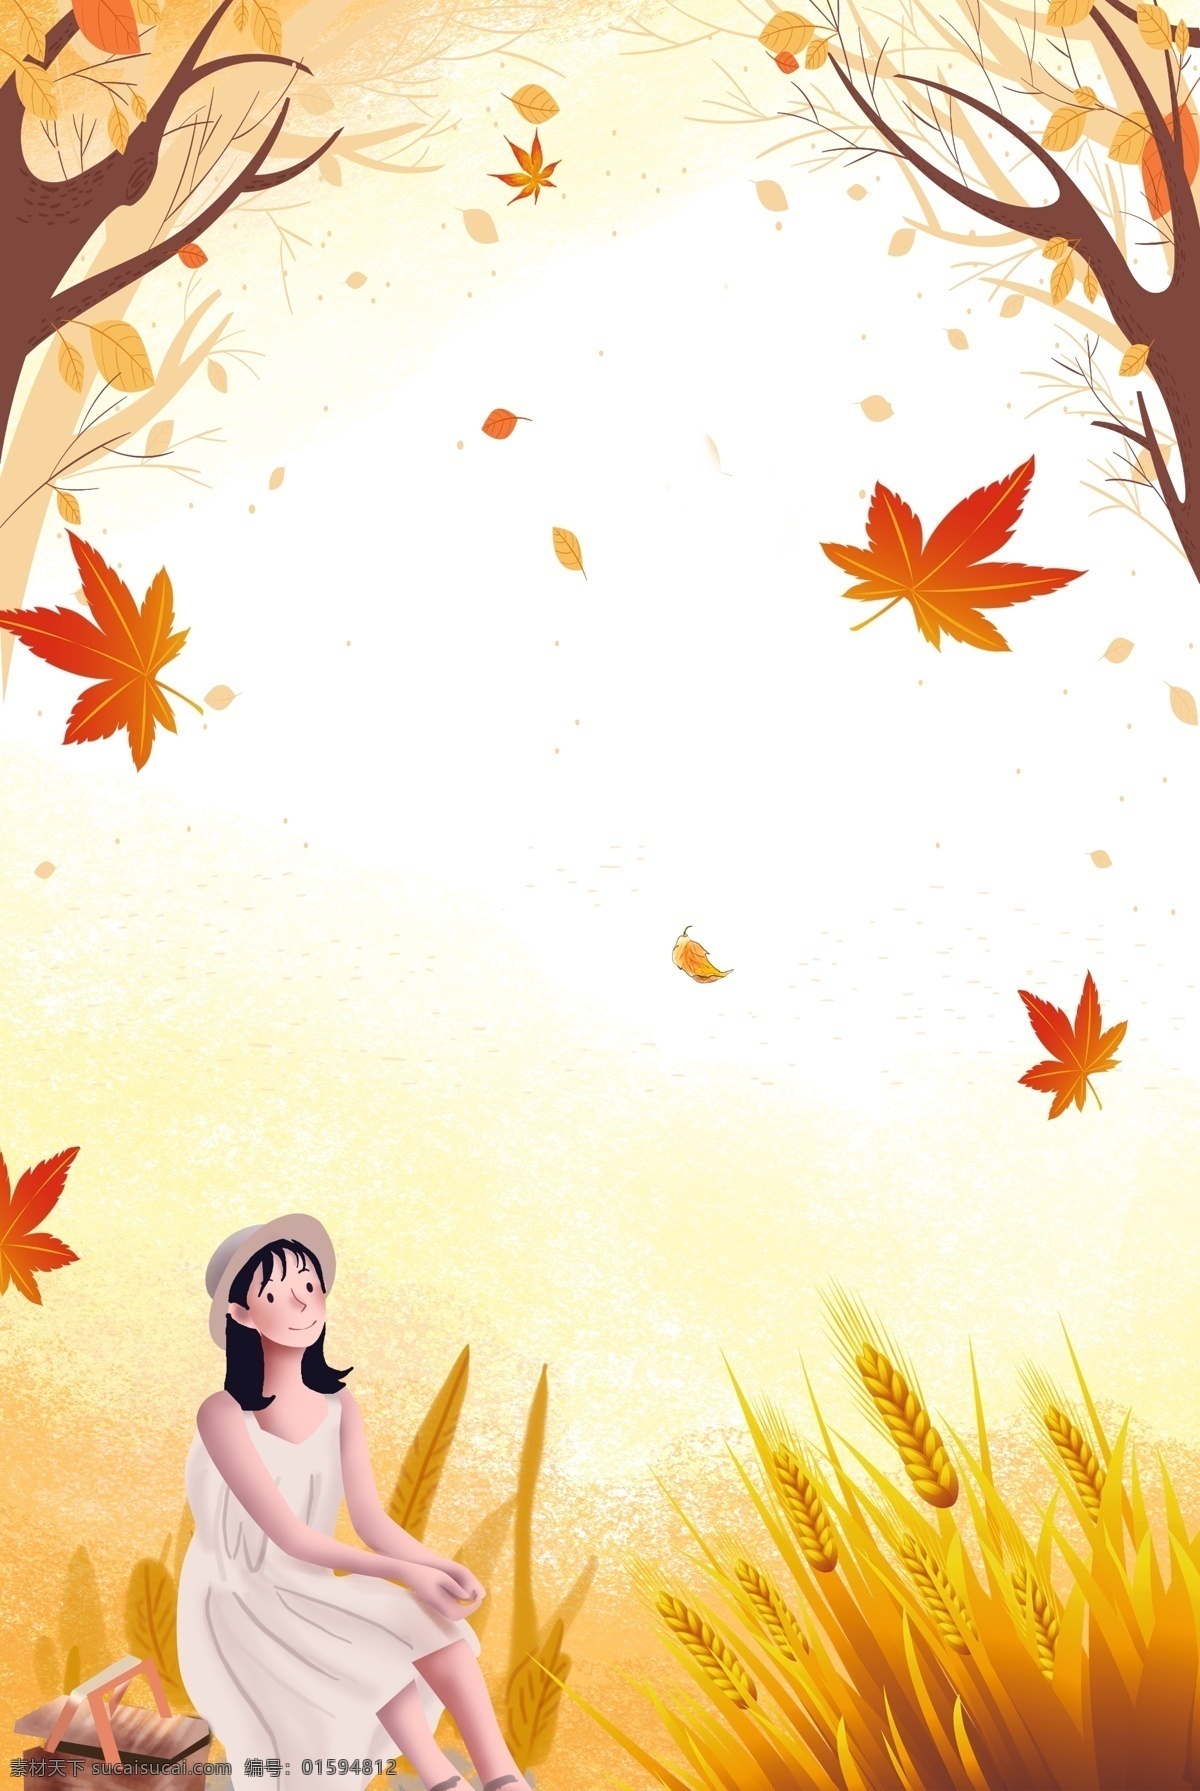 九月 你好 秋天 海报 文艺 清新 秋季 植物 落叶 草地 麦穗 女孩